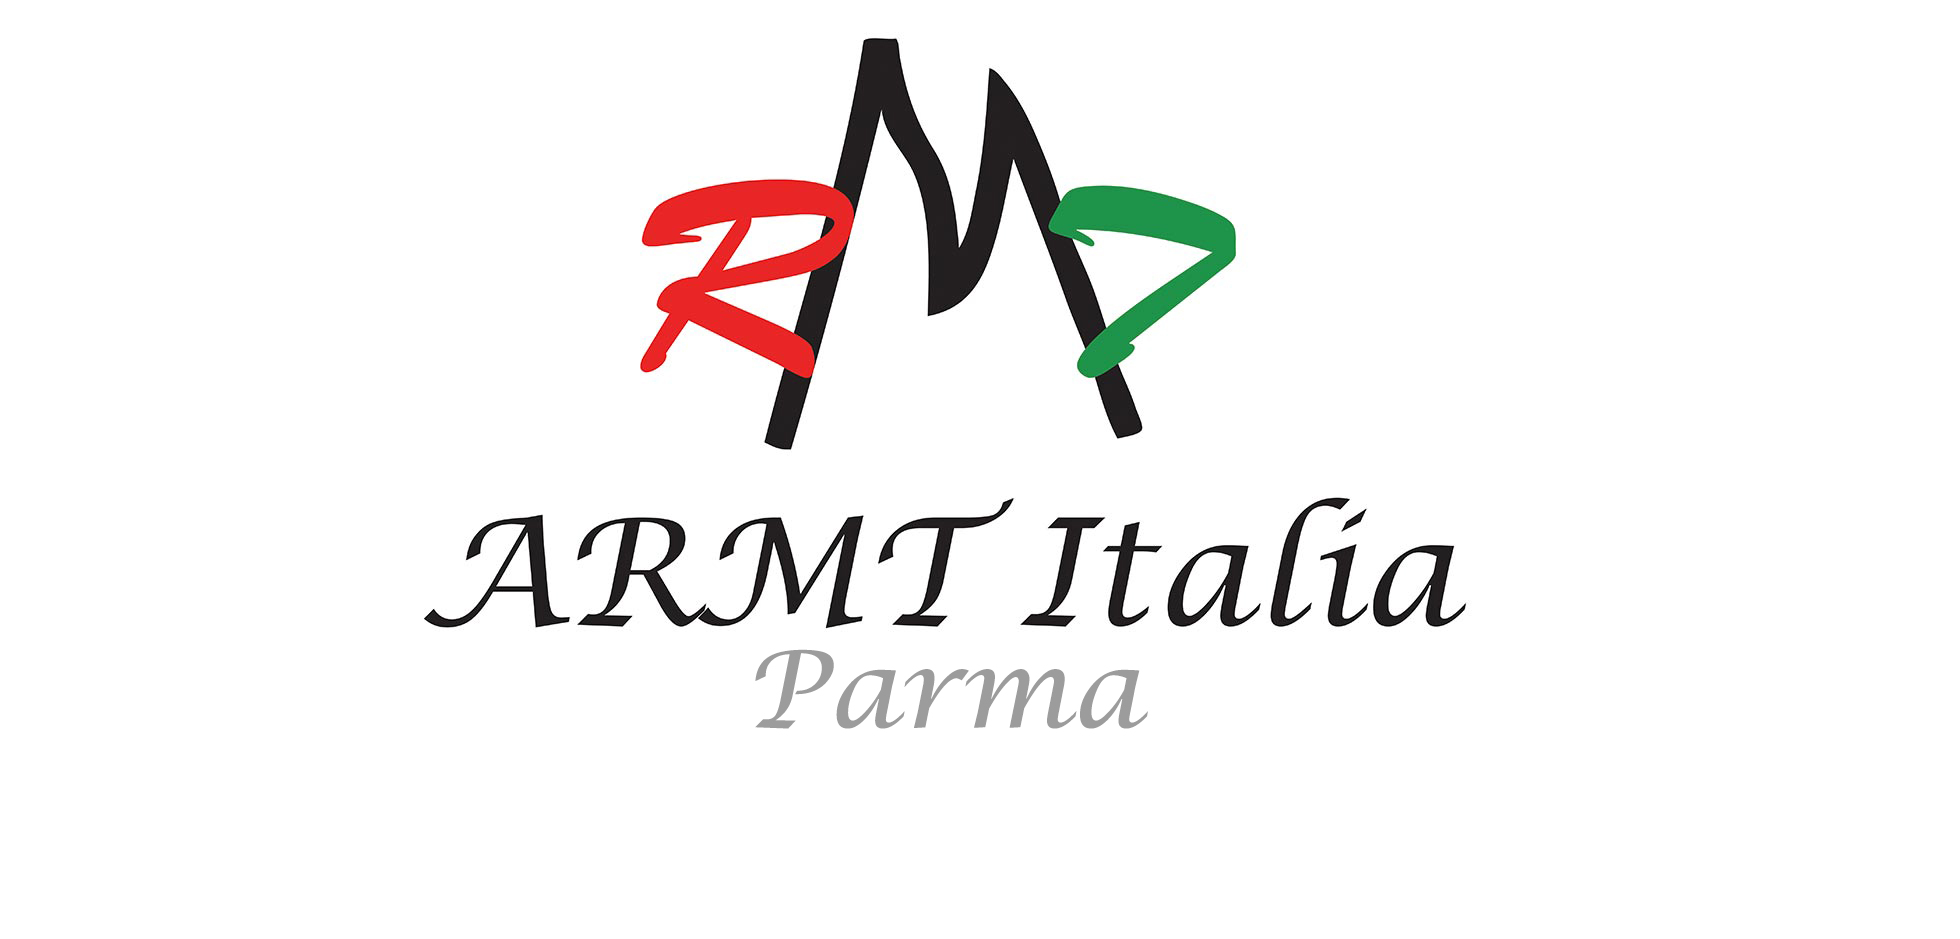 ARMT Italia (Parma)